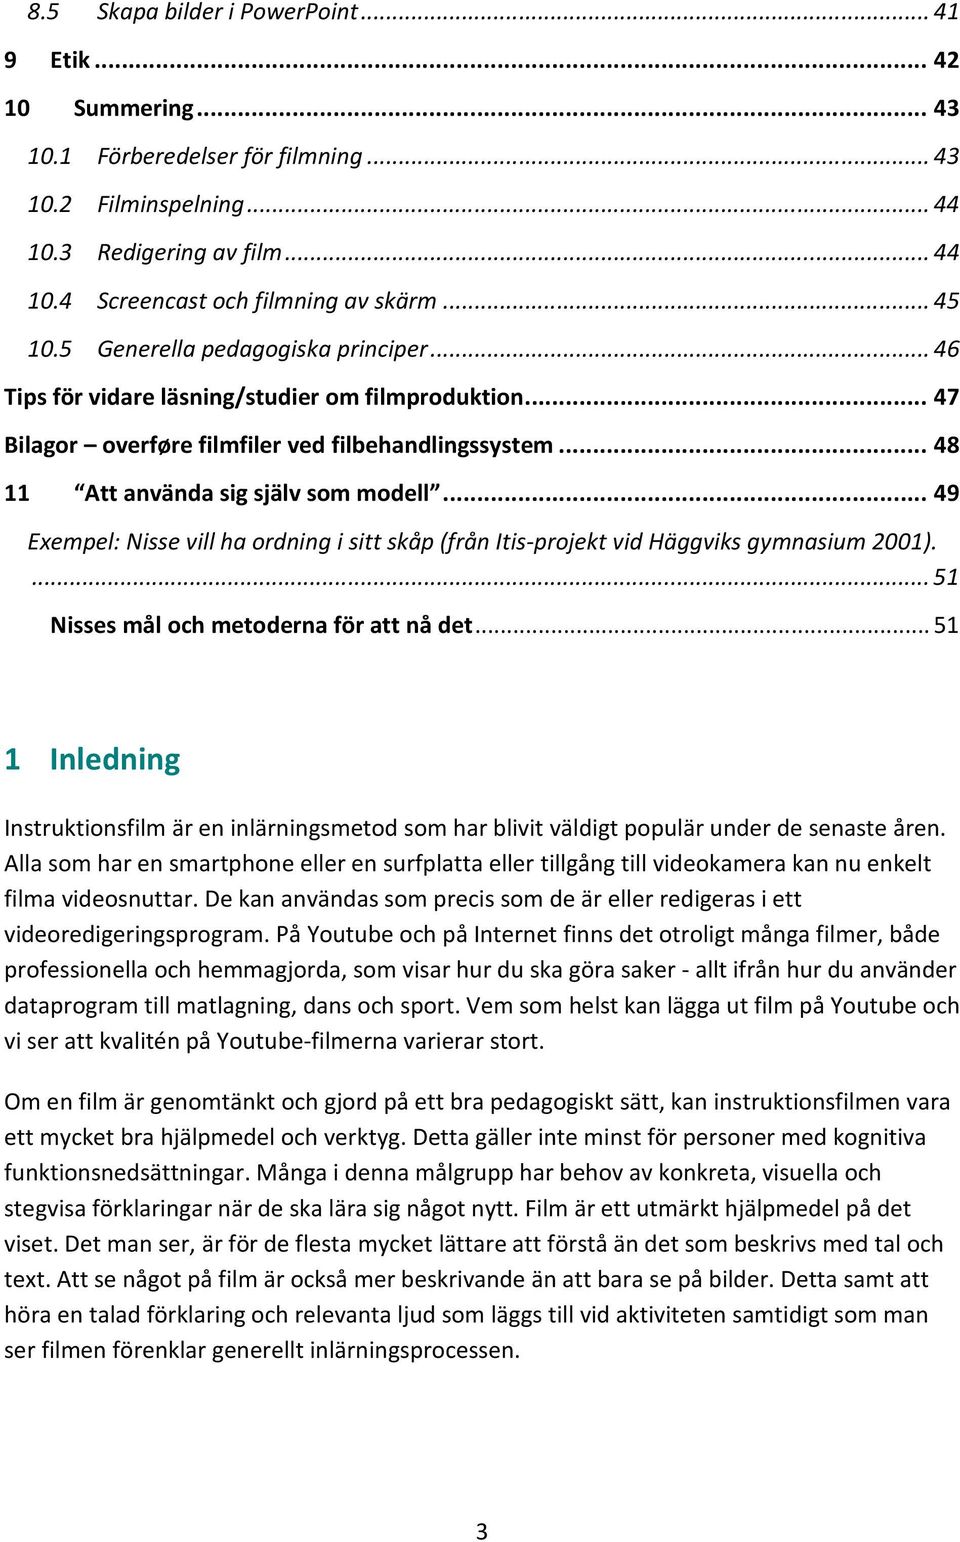 .. 49 Exempel: Nisse vill ha ordning i sitt skåp (från Itis-projekt vid Häggviks gymnasium 2001).... 51 Nisses mål och metoderna för att nå det.